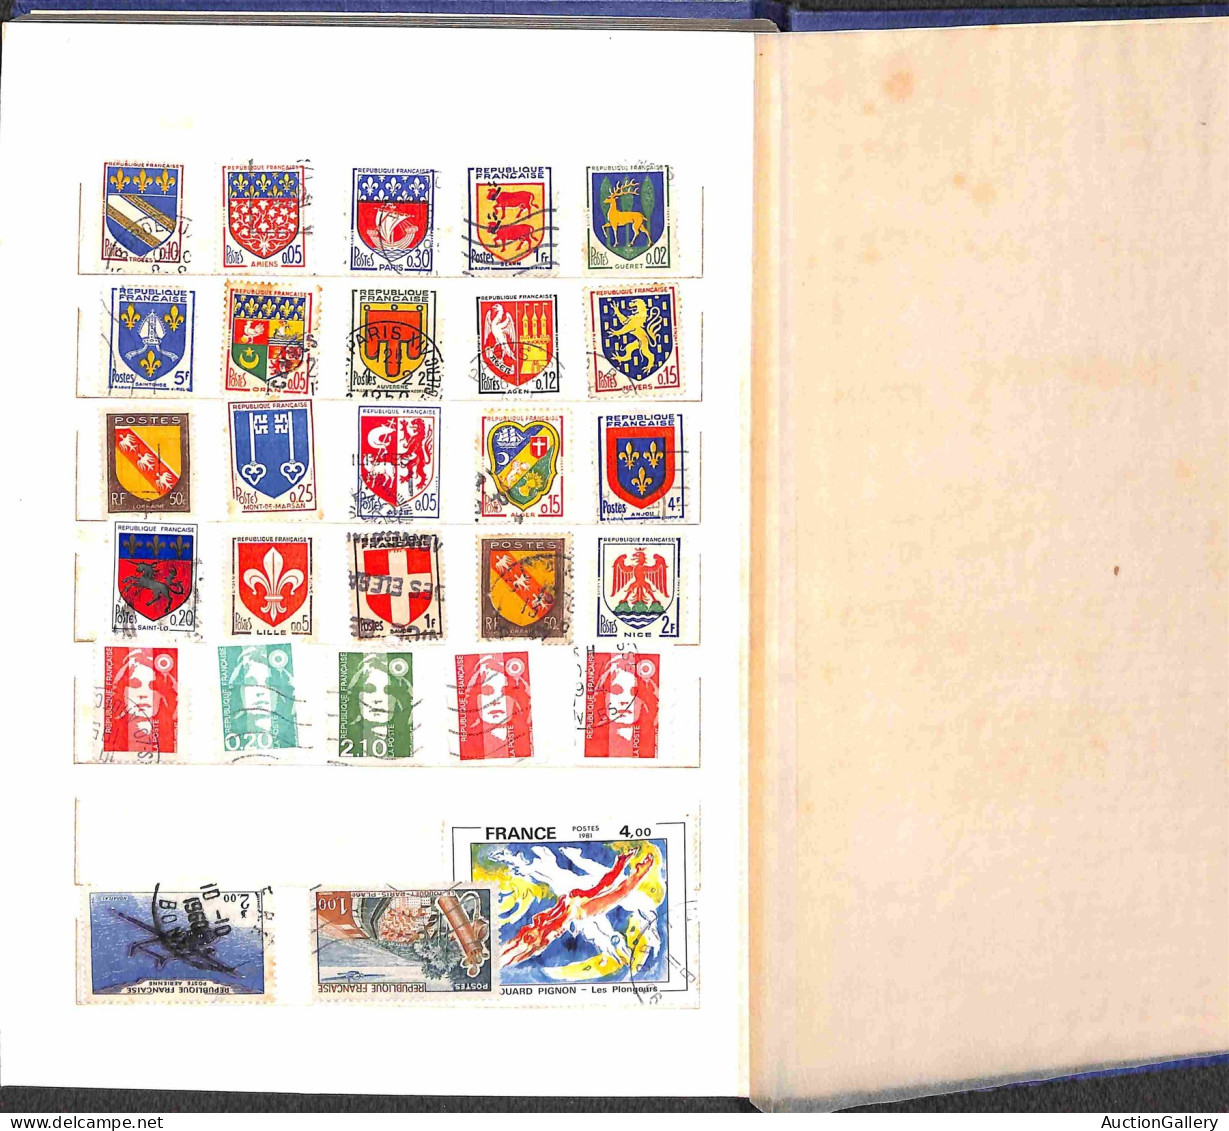 Lotti&Collezioni - Europa&Oltremare - FRANCIA - 1910/1970 circa - Classificatore con oltre 500 francobolli nuovi e usati